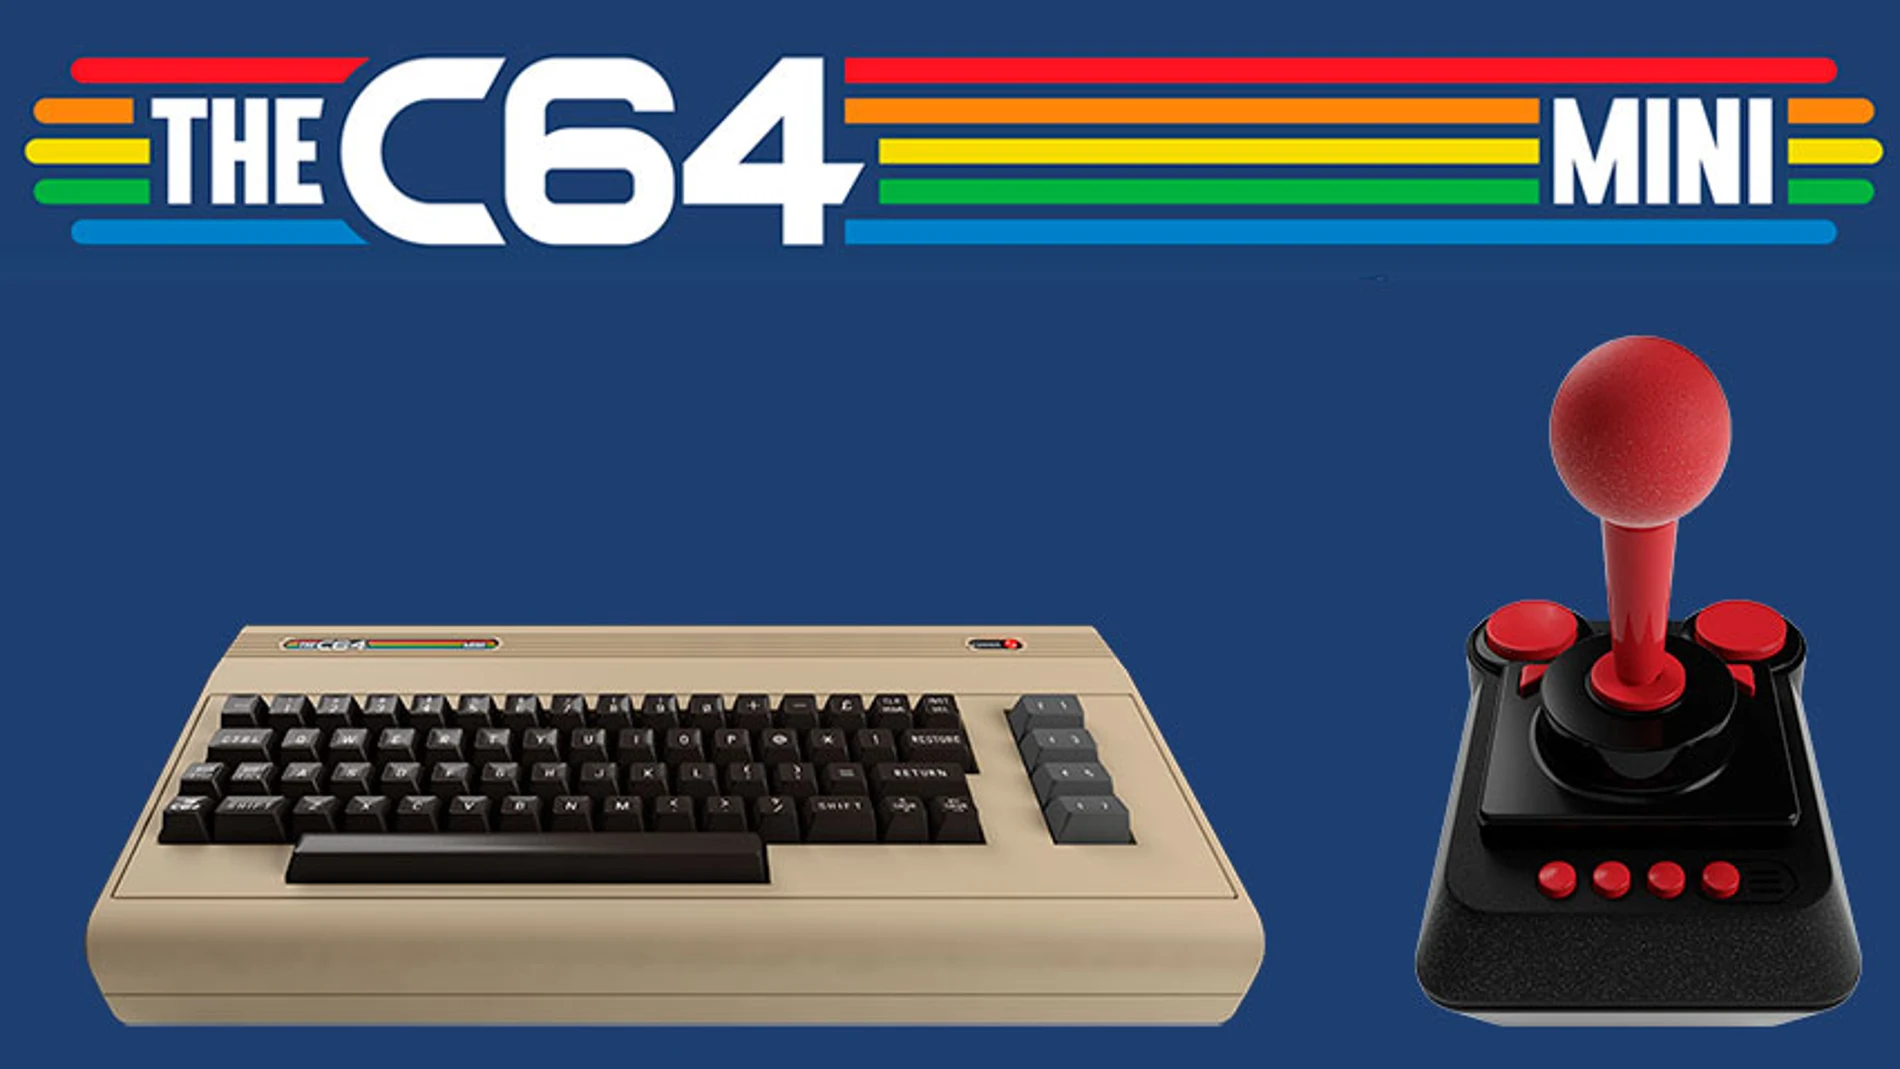 Descubre todas las características de THEC64 Mini, la nueva versión del Commodore 64